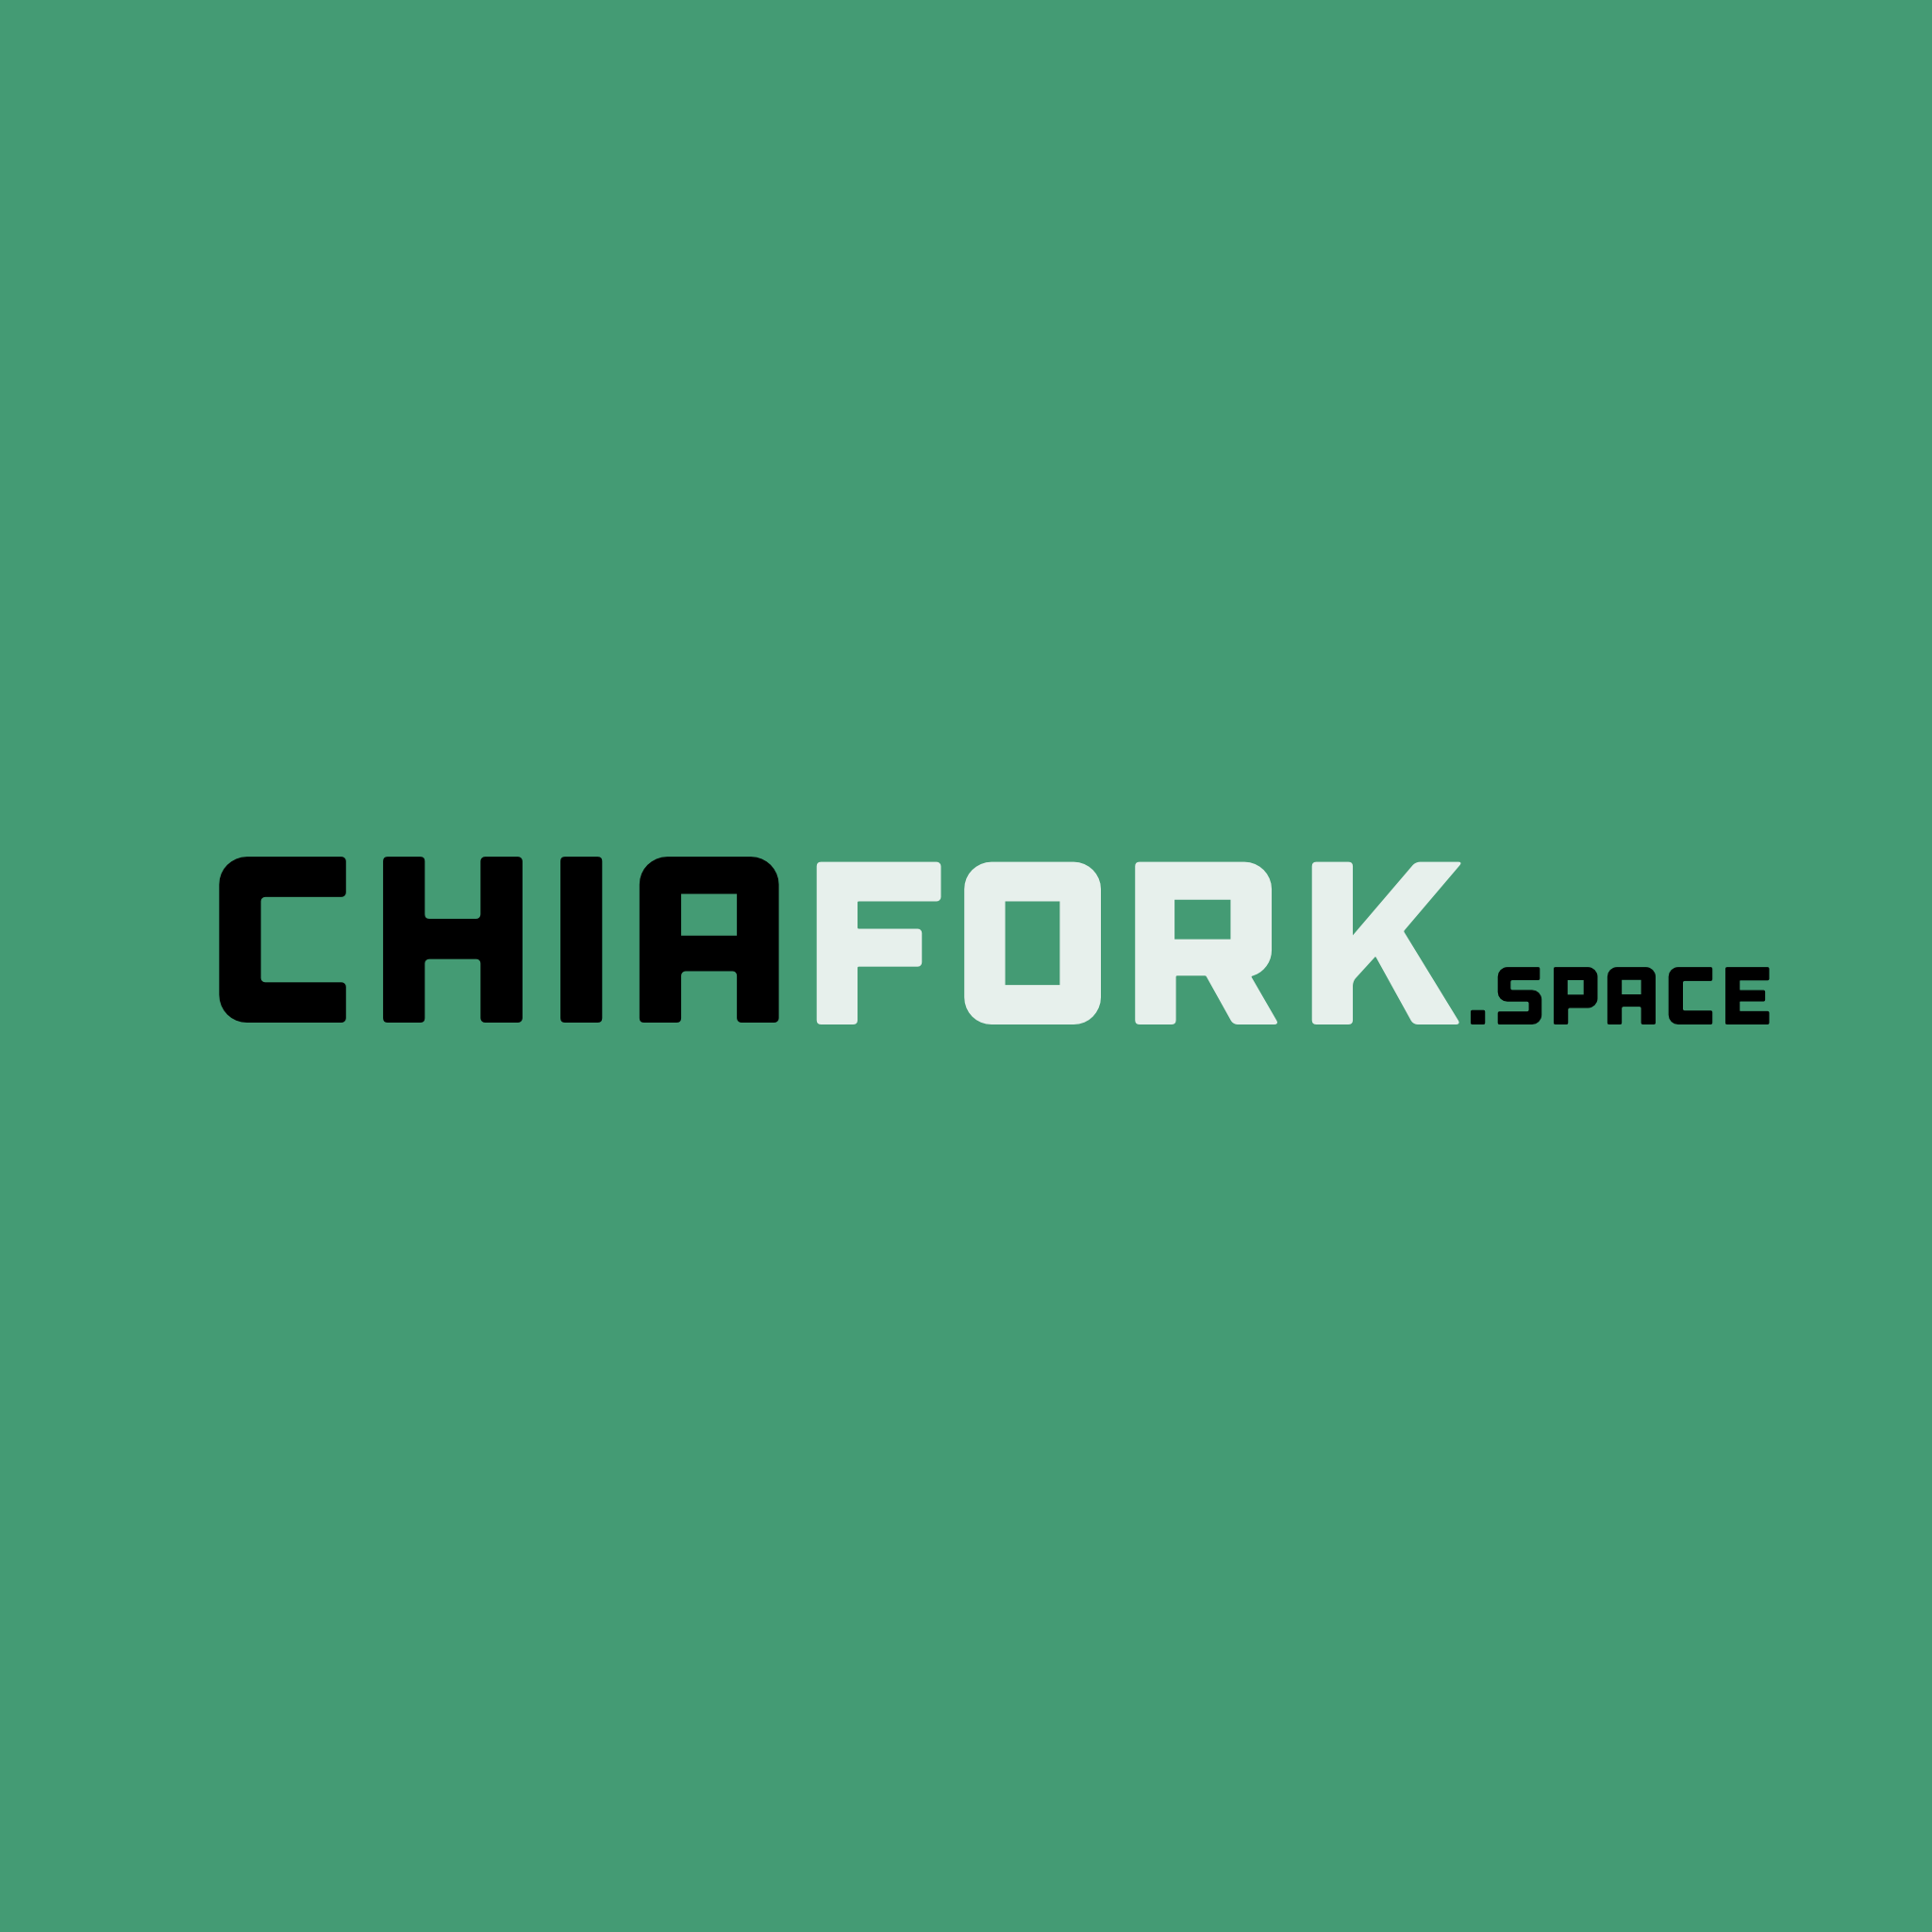 ChiaFork.space Logo